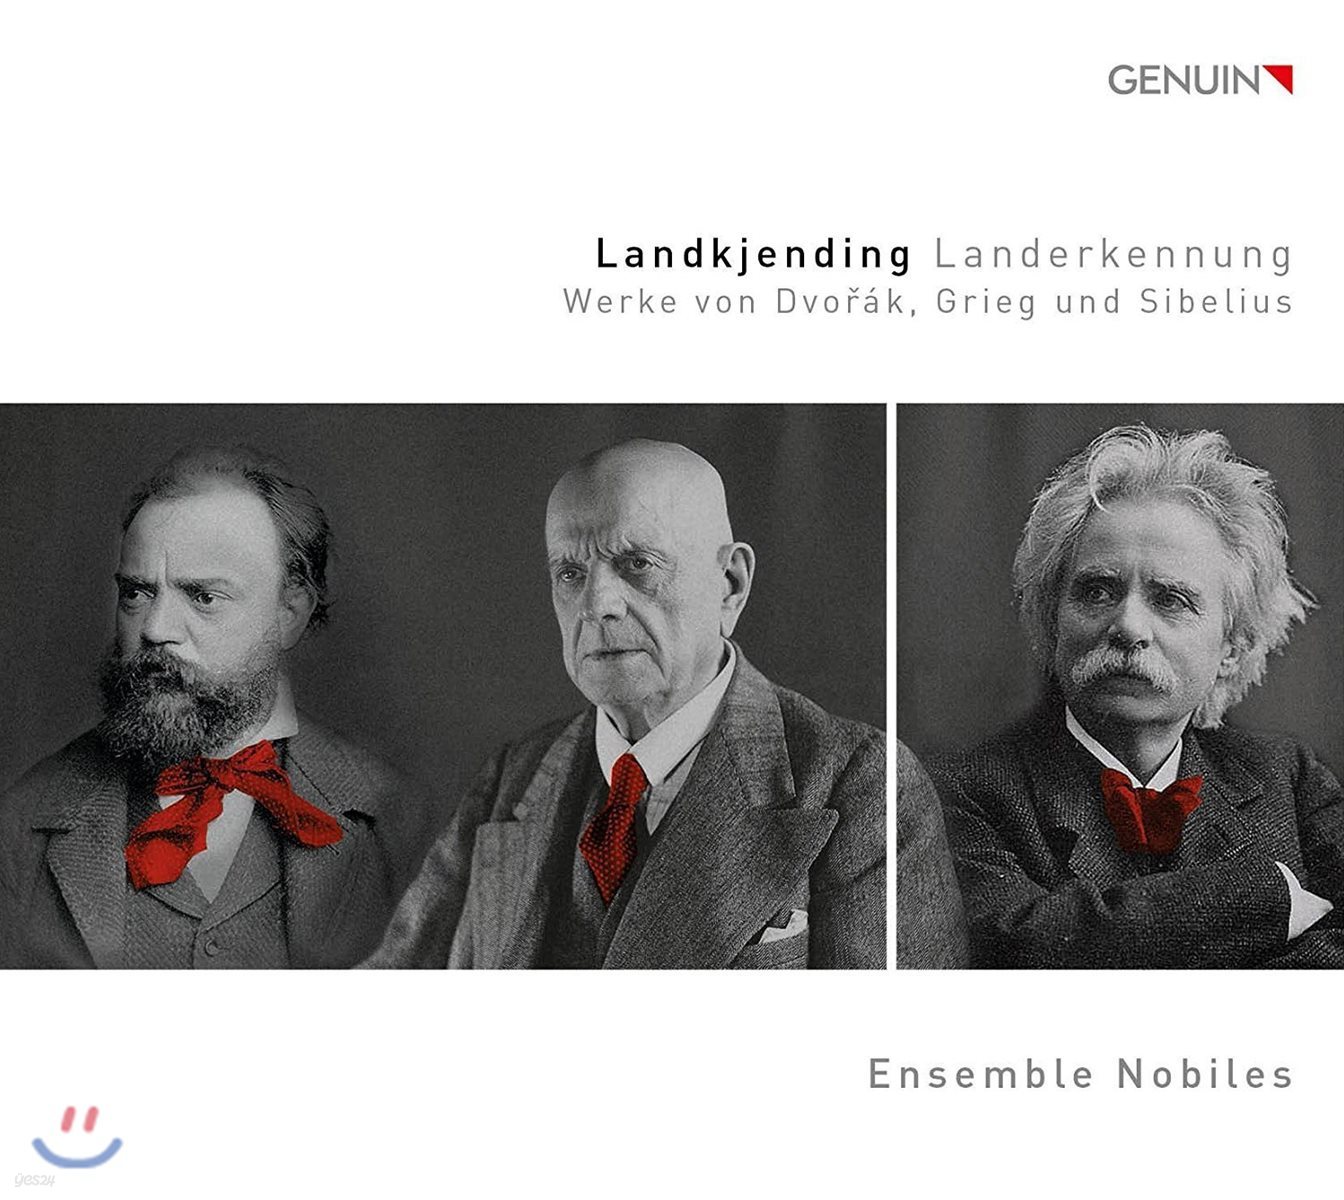 박성아 / Ensemble Nobiles 드보르작 / 그리그 / 시벨리우스의 작품집 - 노빌레스 앙상블 (Landkjending &#39;Recognition of Land&#39;: Works by Dvorak, Grieg and Sibelius)